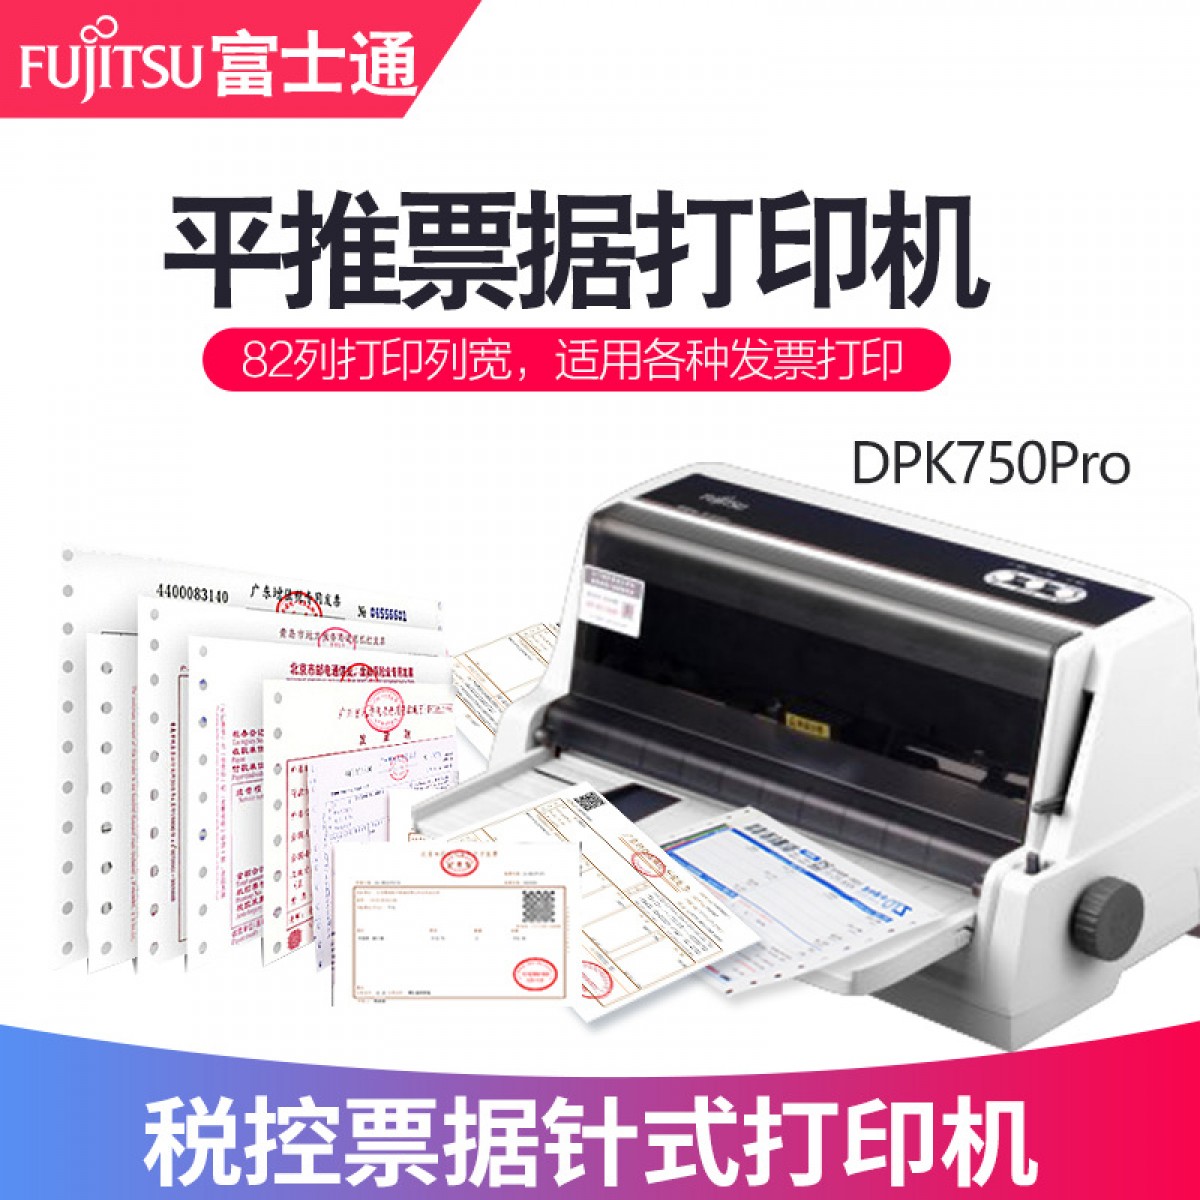 全新富士通打印机DPK750Pro针式打印机平推票据出库单发票打印机